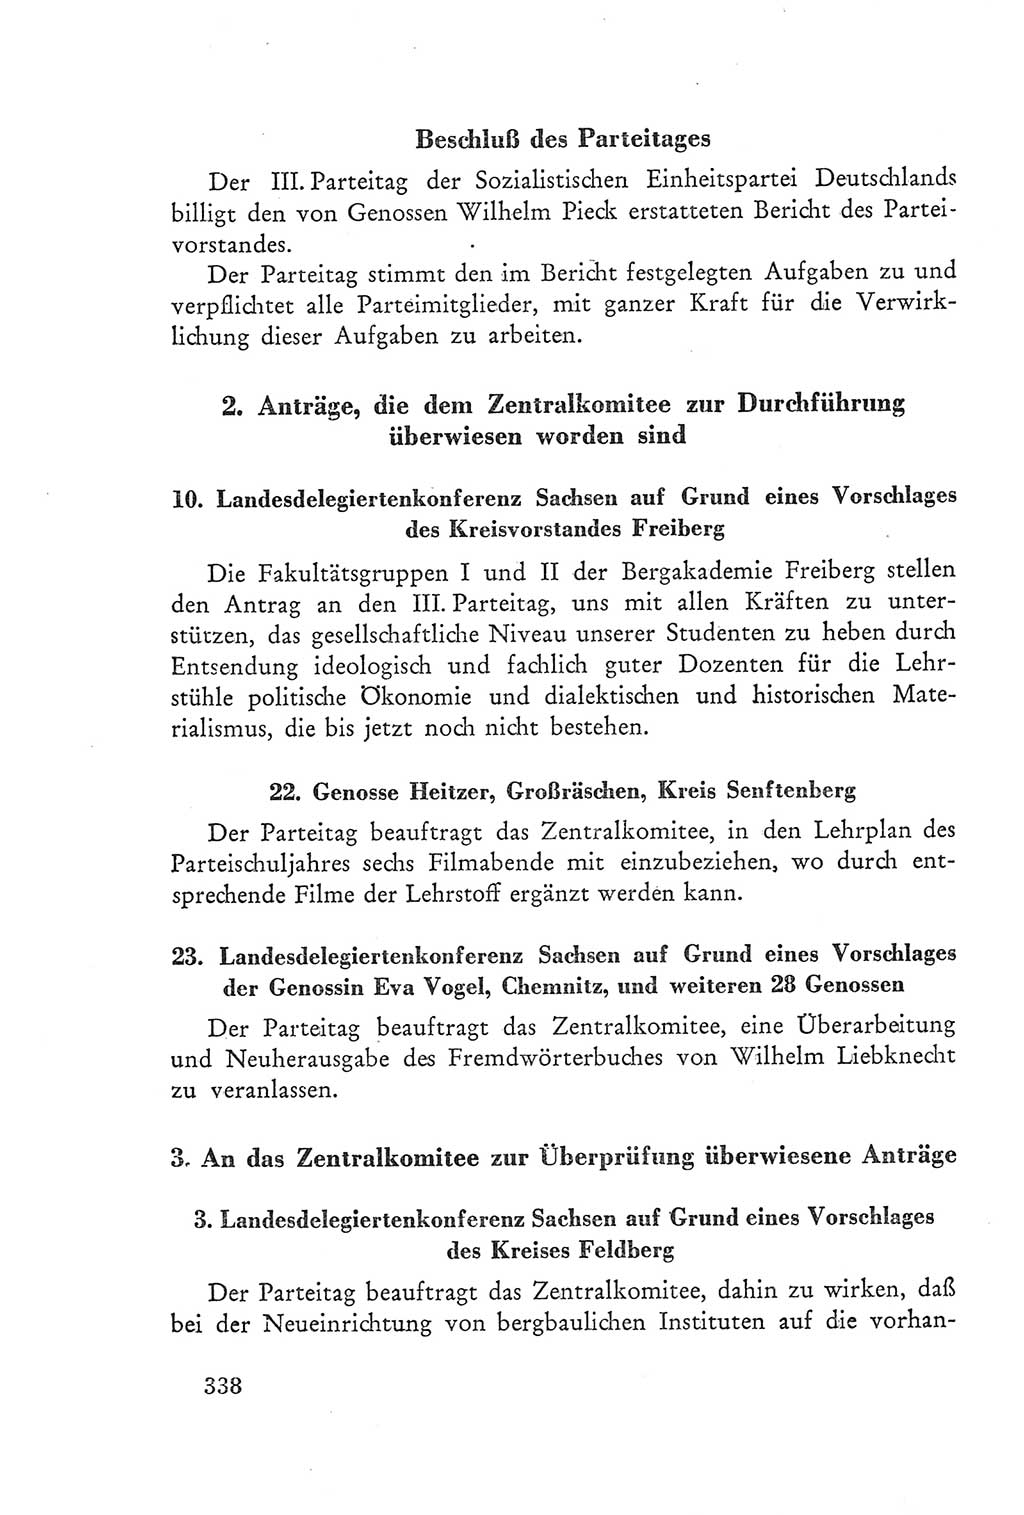 Protokoll der Verhandlungen des Ⅲ. Parteitages der Sozialistischen Einheitspartei Deutschlands (SED) [Deutsche Demokratische Republik (DDR)] 1950, Band 2, Seite 338 (Prot. Verh. Ⅲ. PT SED DDR 1950, Bd. 2, S. 338)